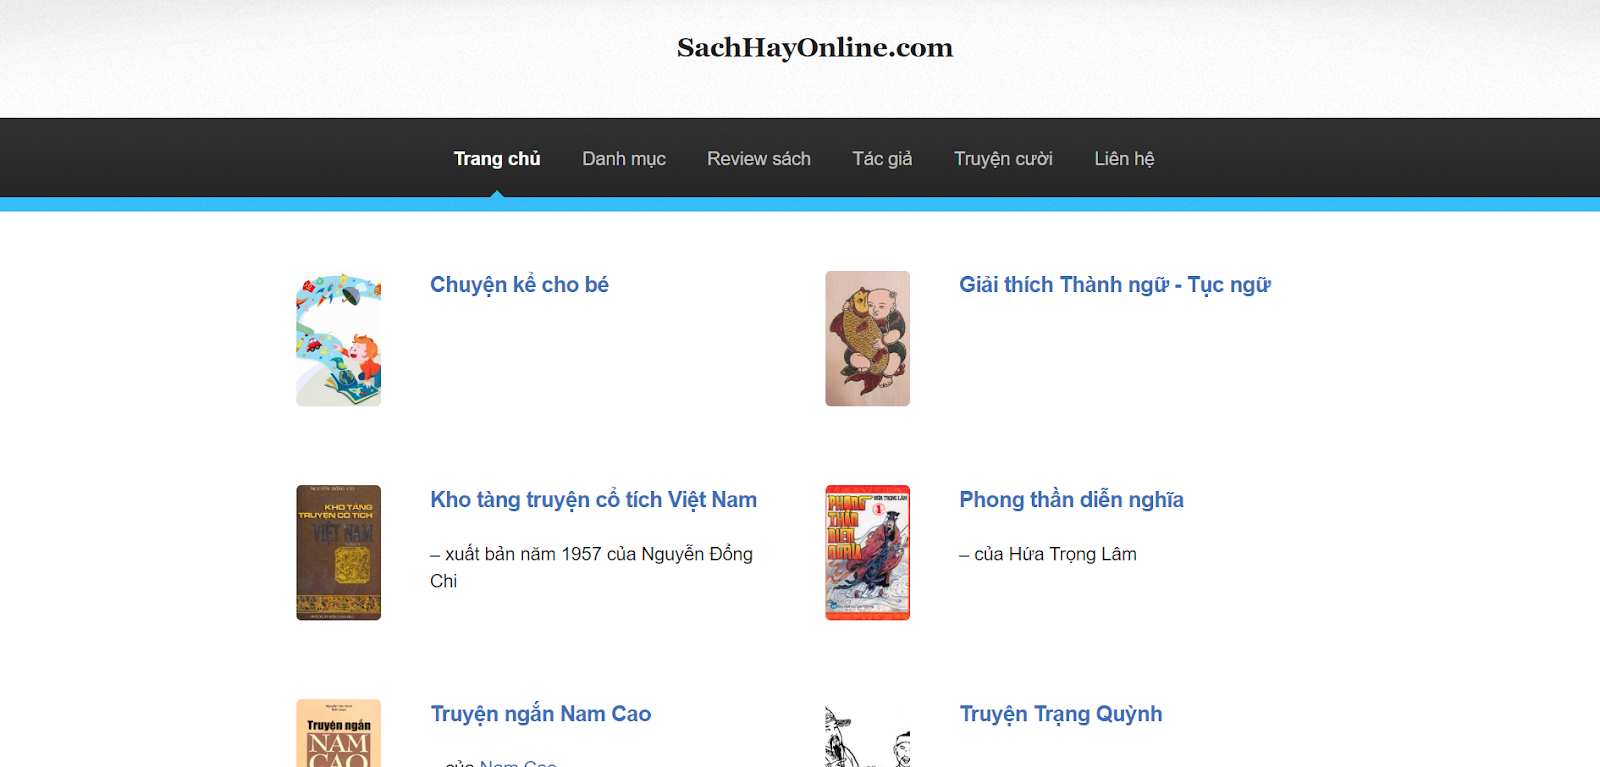 SachHayOnline.com mang đến cho độc giả trải nghiệm đọc sách miễn phí và tiện lợi.